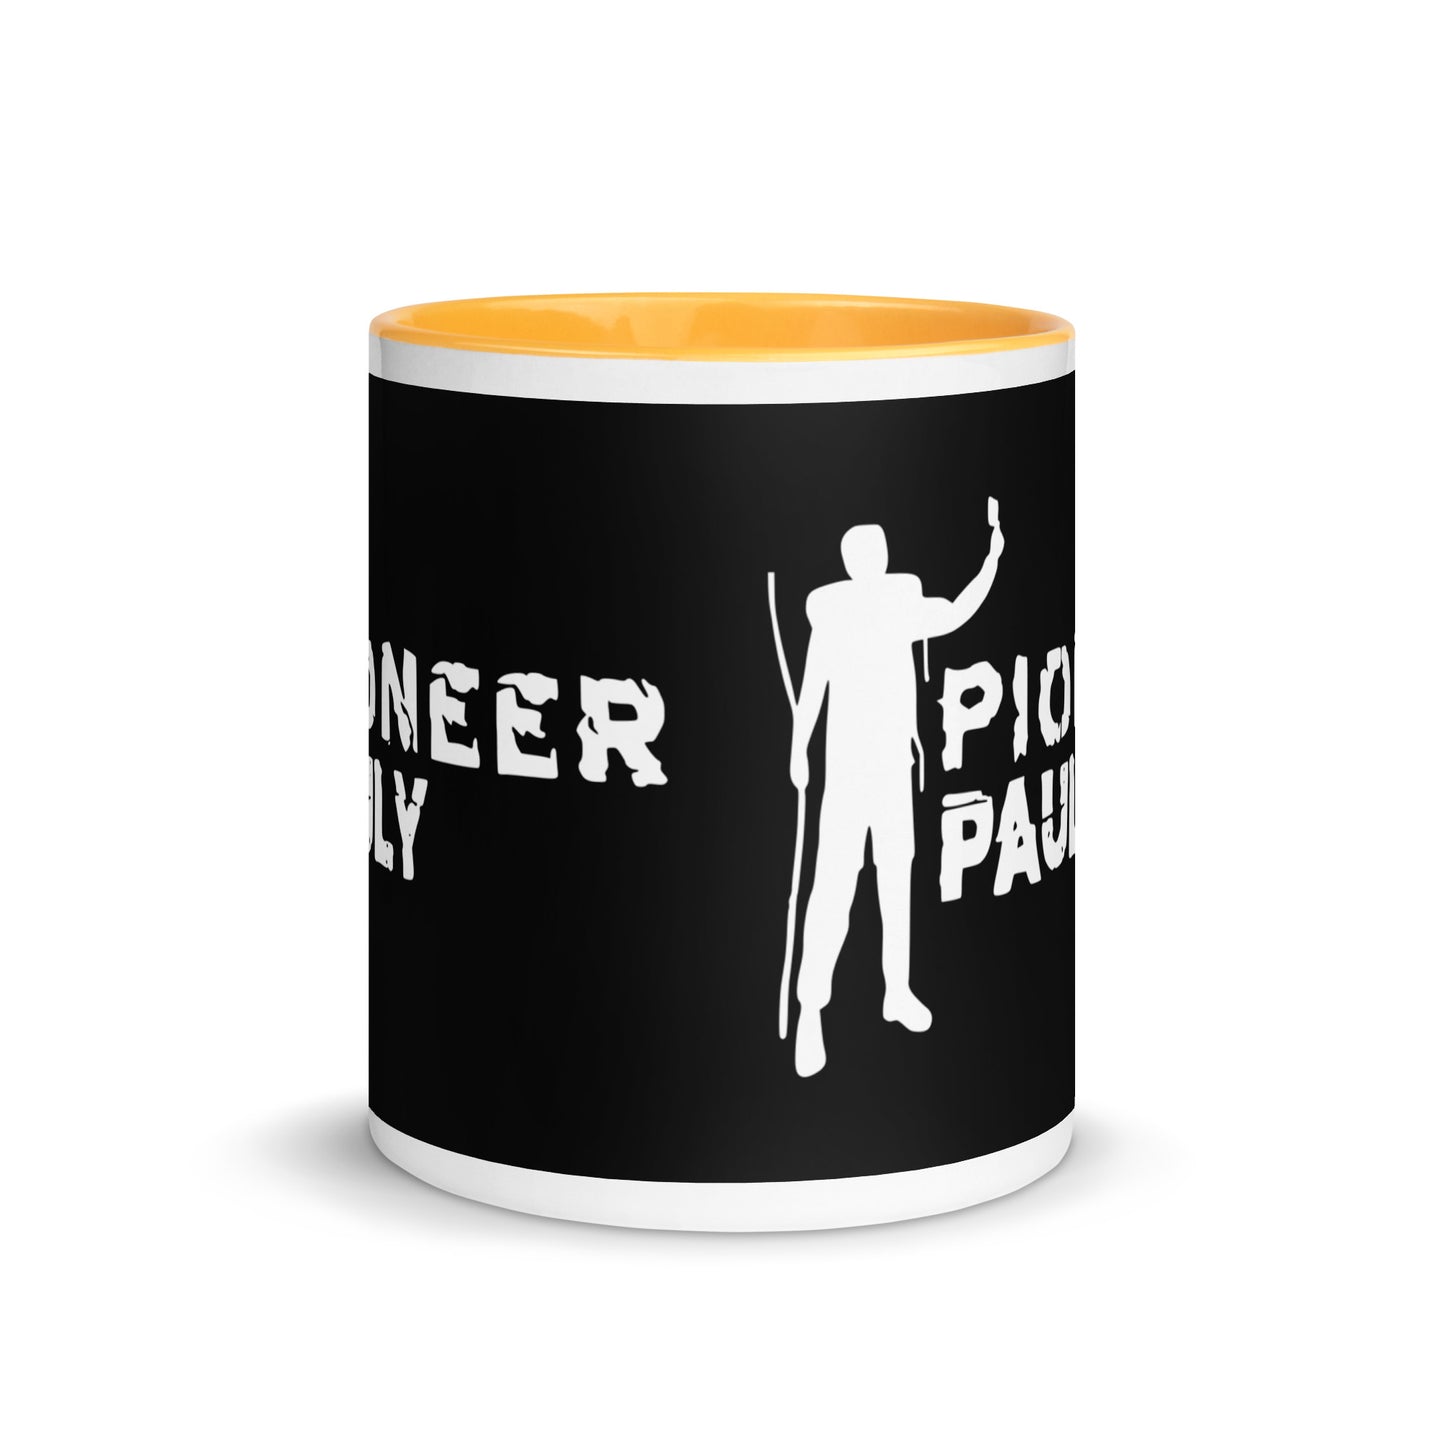 Pioneer Pauly White Logo Coffee Mug